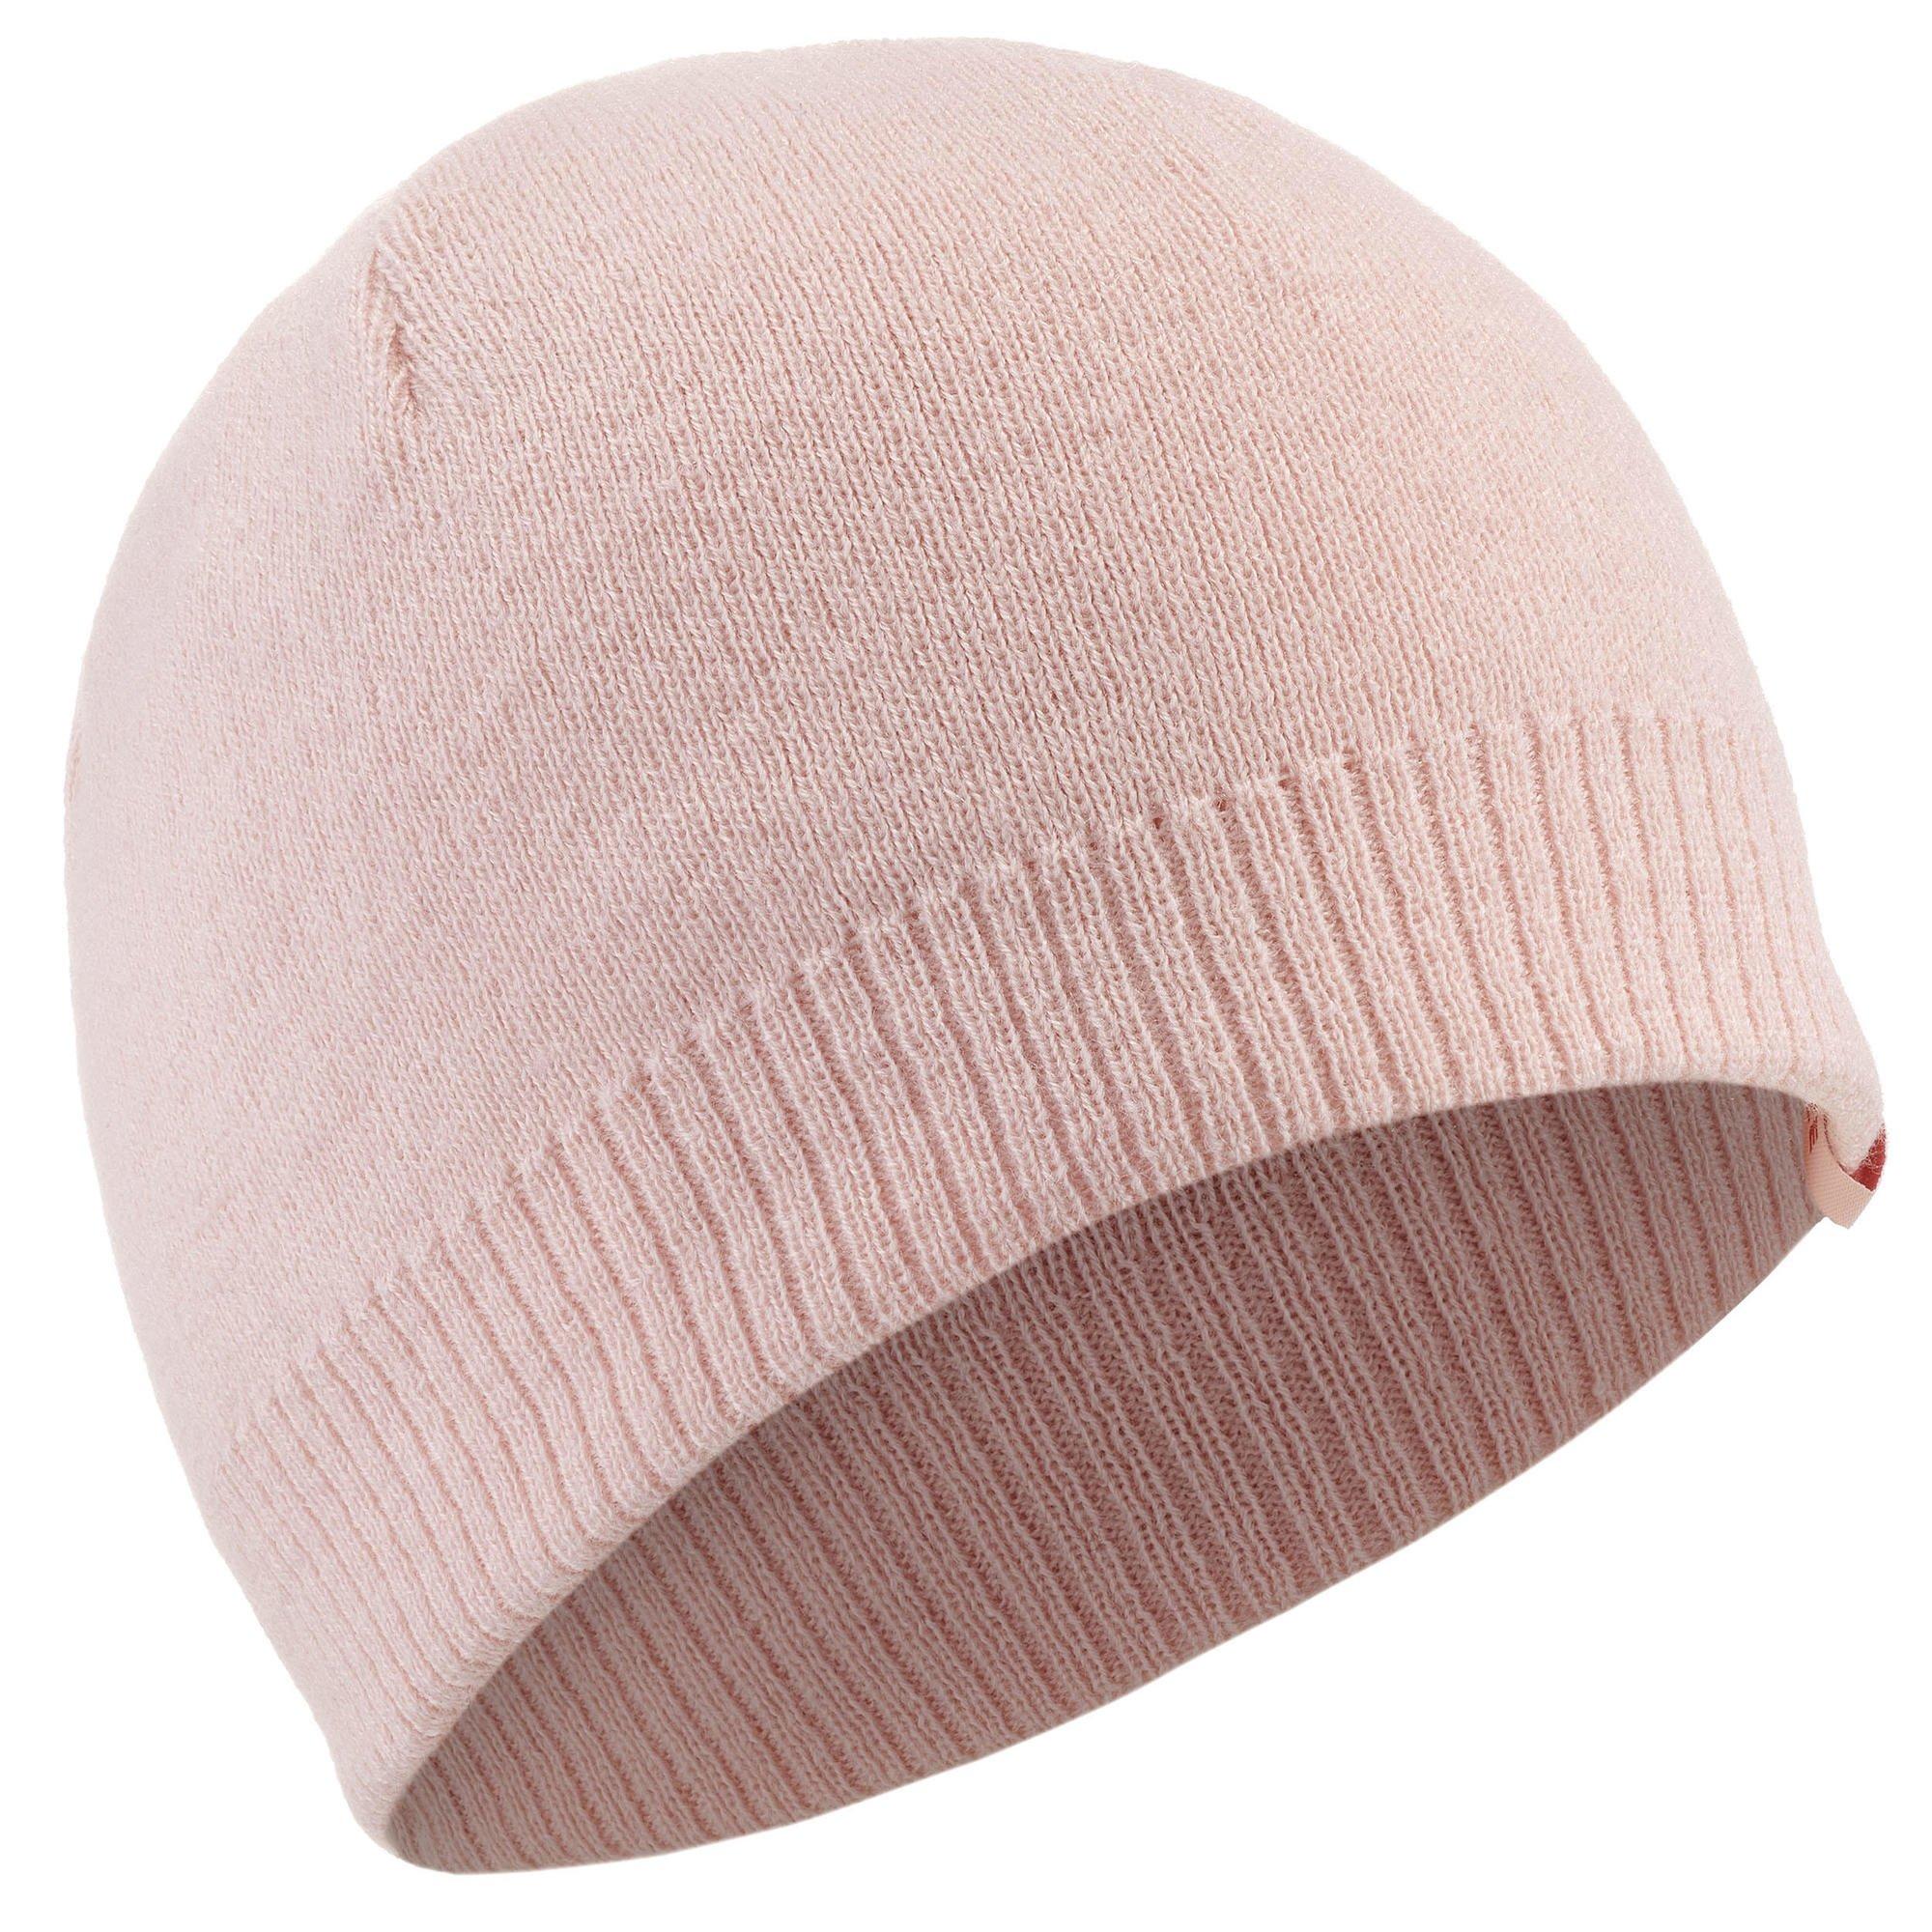 Лыжная шапка Decathlon для взрослых — простая Wedze, розовый женская зимняя меховая шапка с капюшоном вязаная кашемировая шапка с воротником теплая русская уличная лыжная ветрозащитная шапка толст